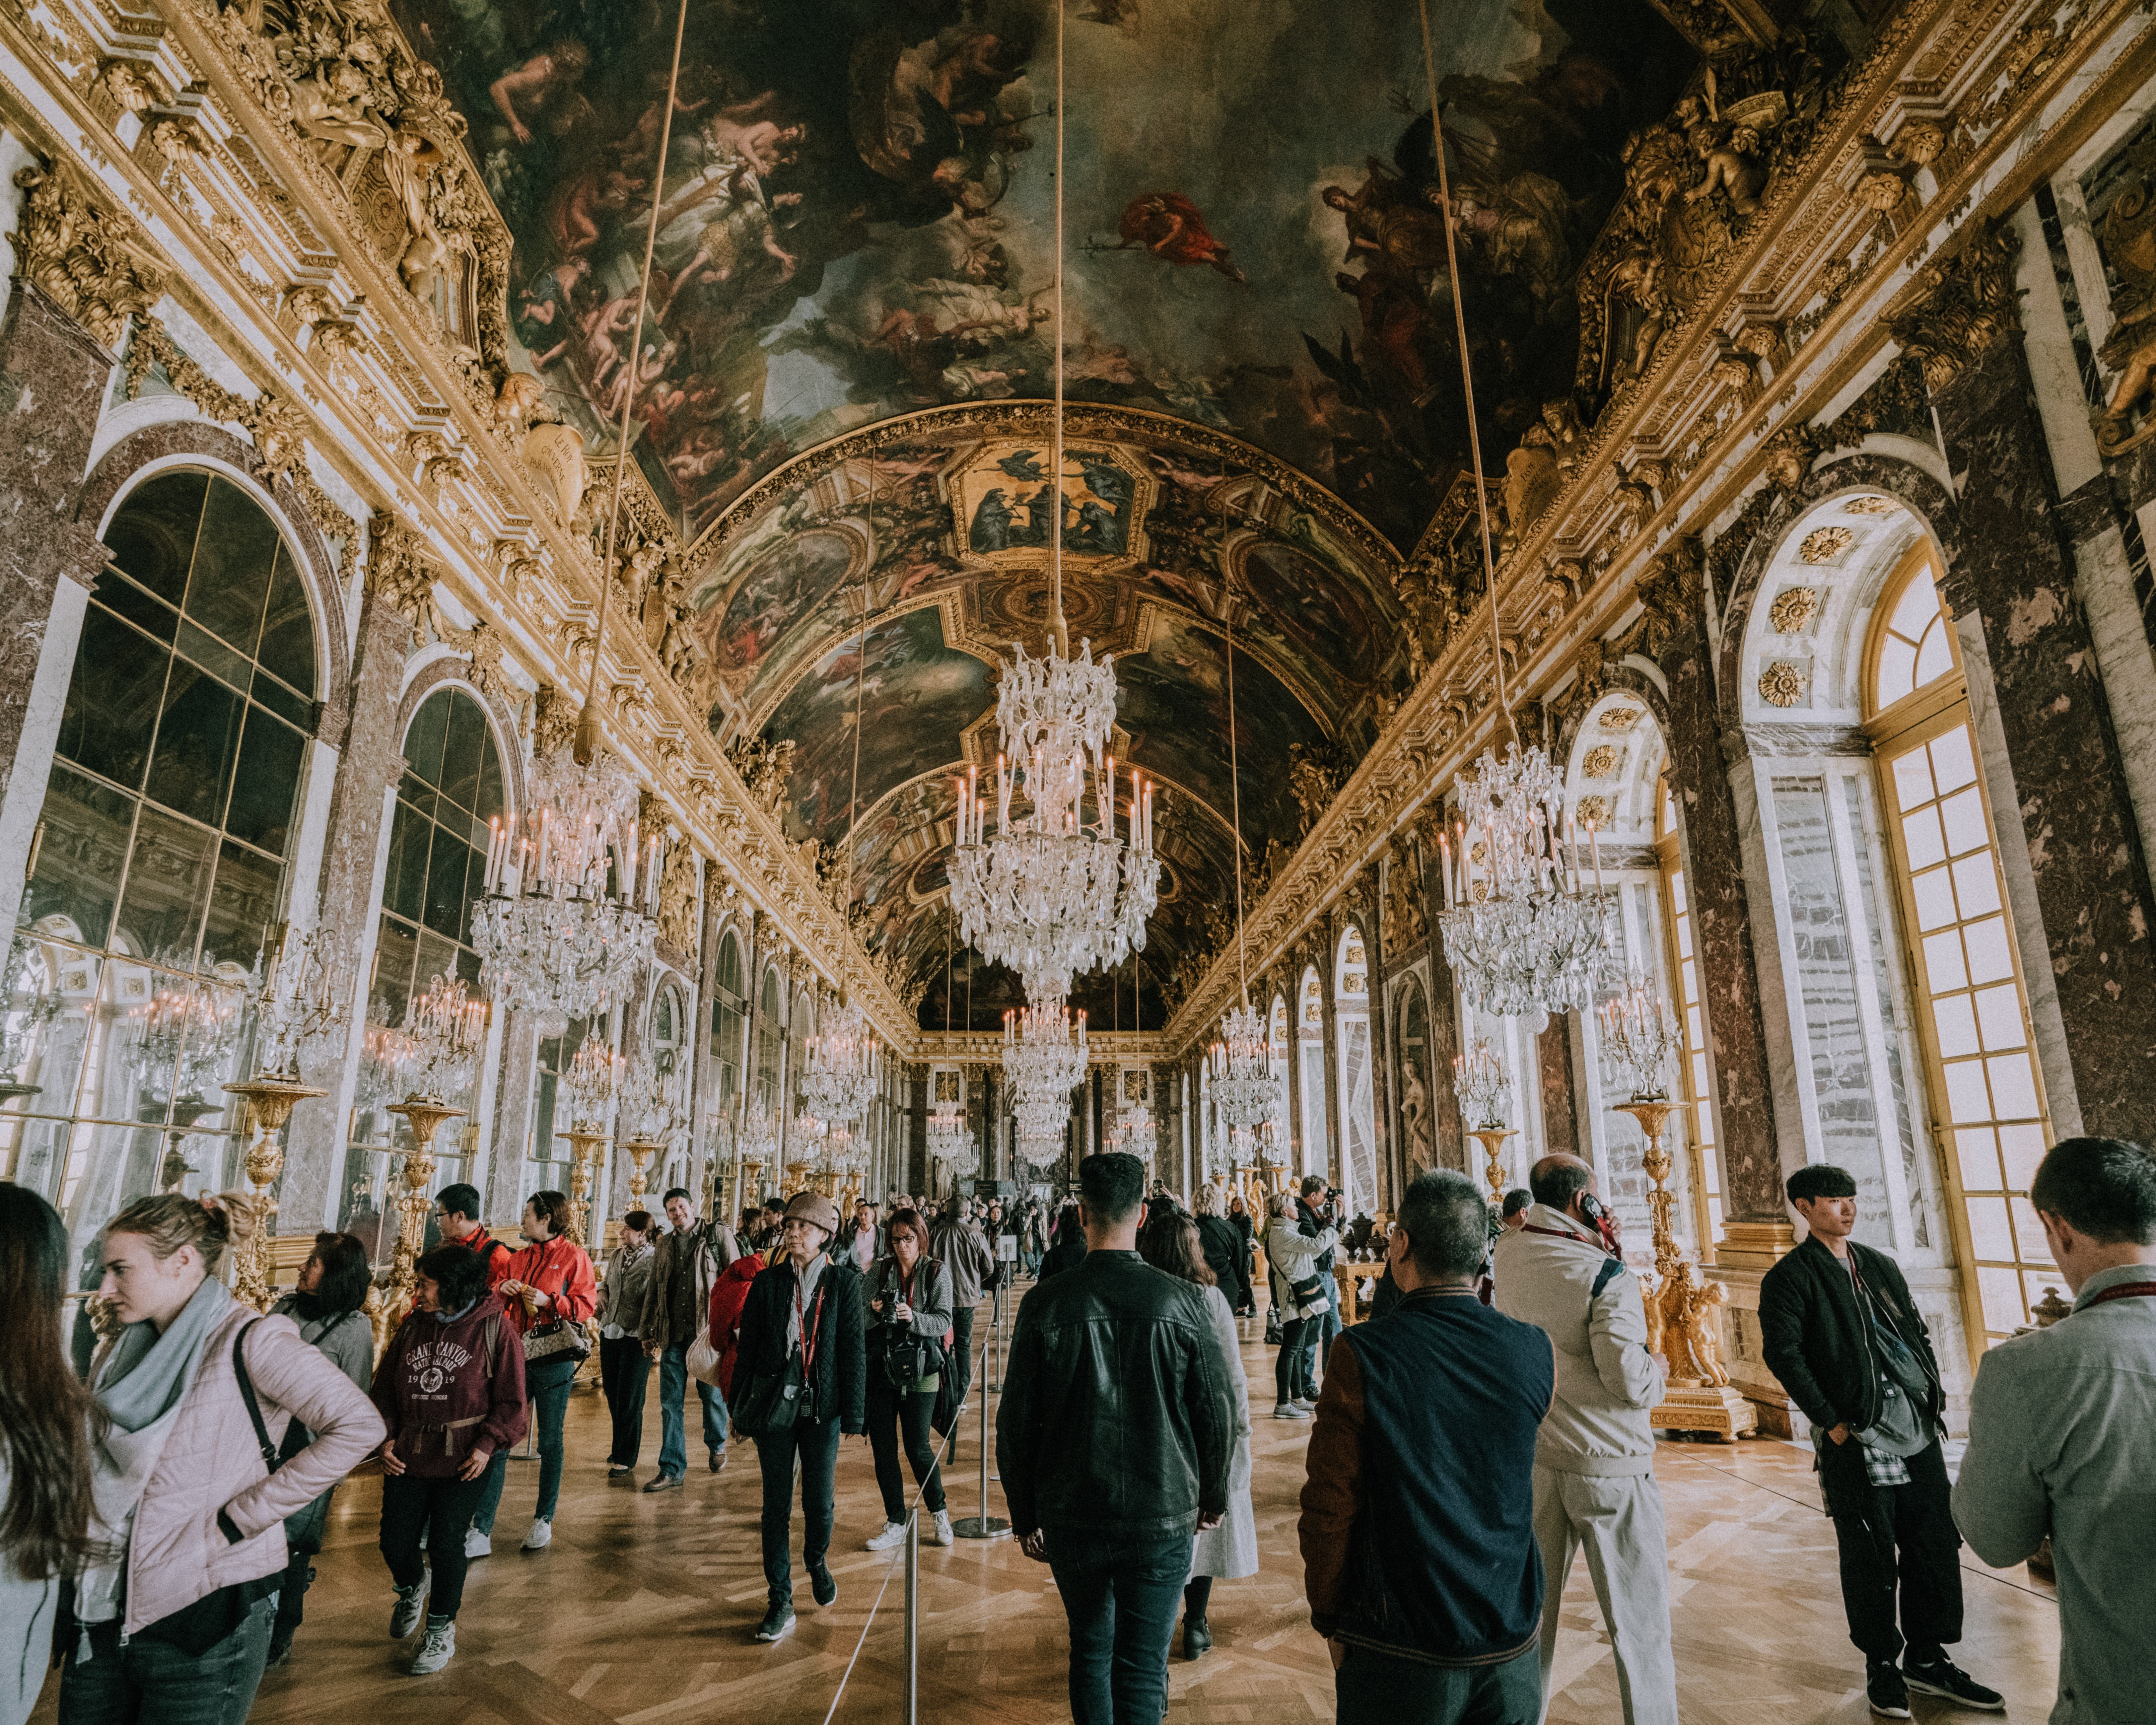 Turistas deambulan por los pasillos de Versalles Foto